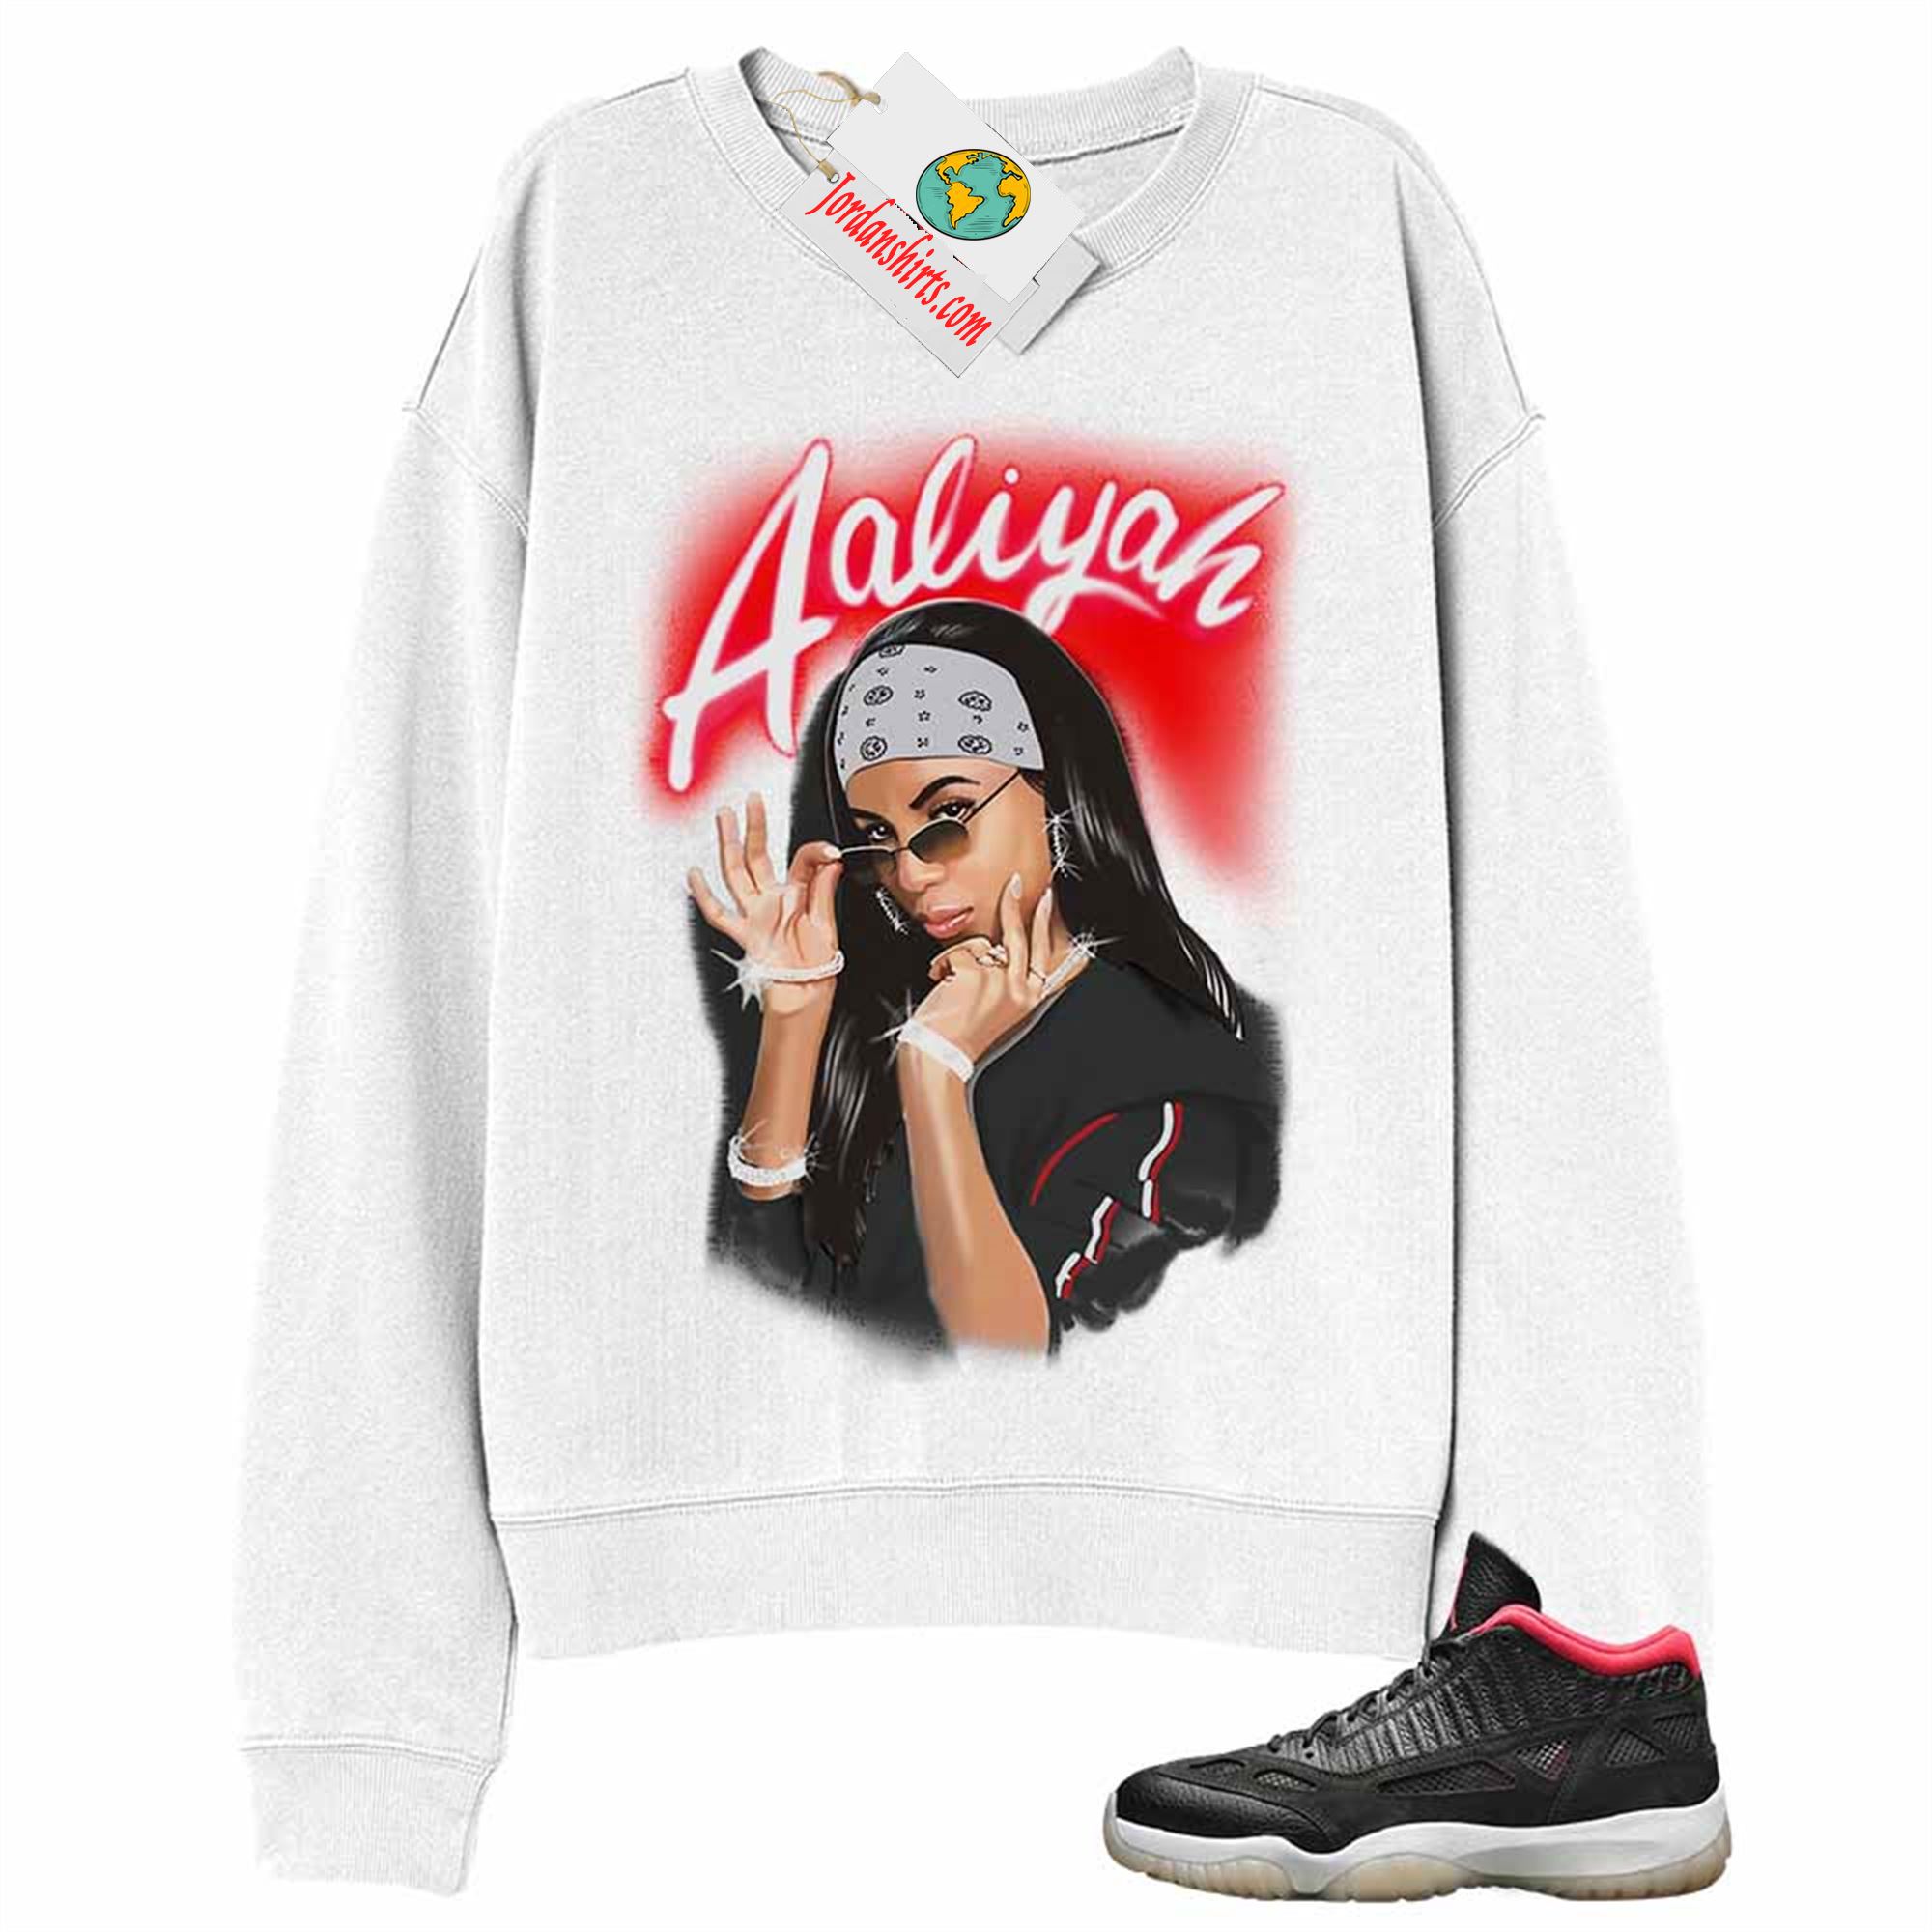 Jordan 11 Sweatshirt, Aaliyah Airbrush White Sweatshirt Air Jordan 11 Bred 11s Plus Size Up To 5xl